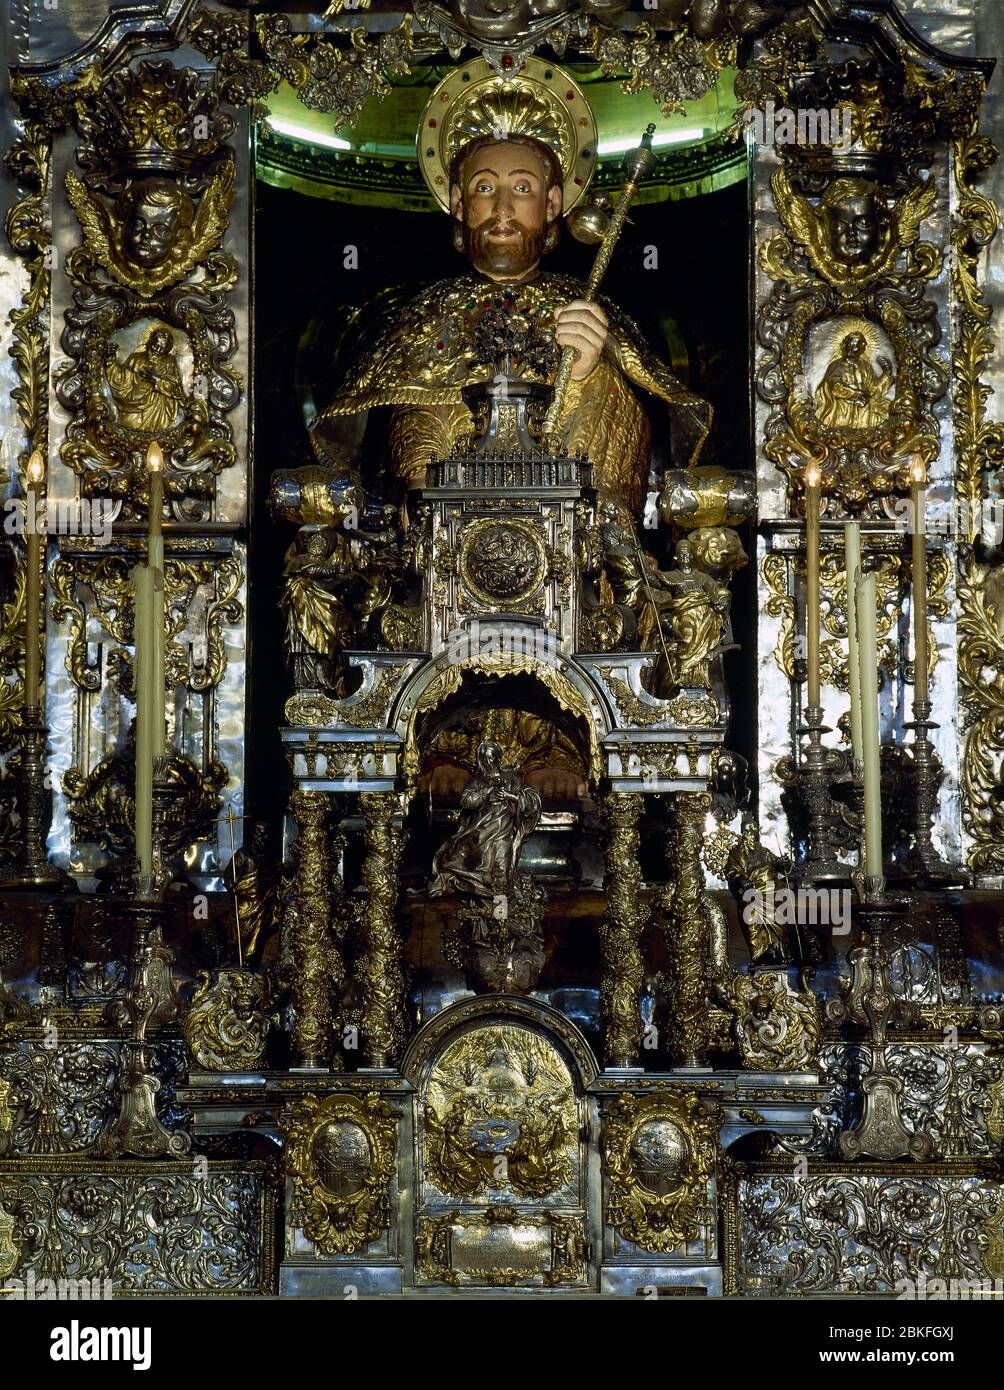 Spanien. Galicien. Kathedrale von Santiago de Compostela. Hauptaltar, Detail. Statue des heiligen Jakobus. 12. Jahrhundert. Stockfoto